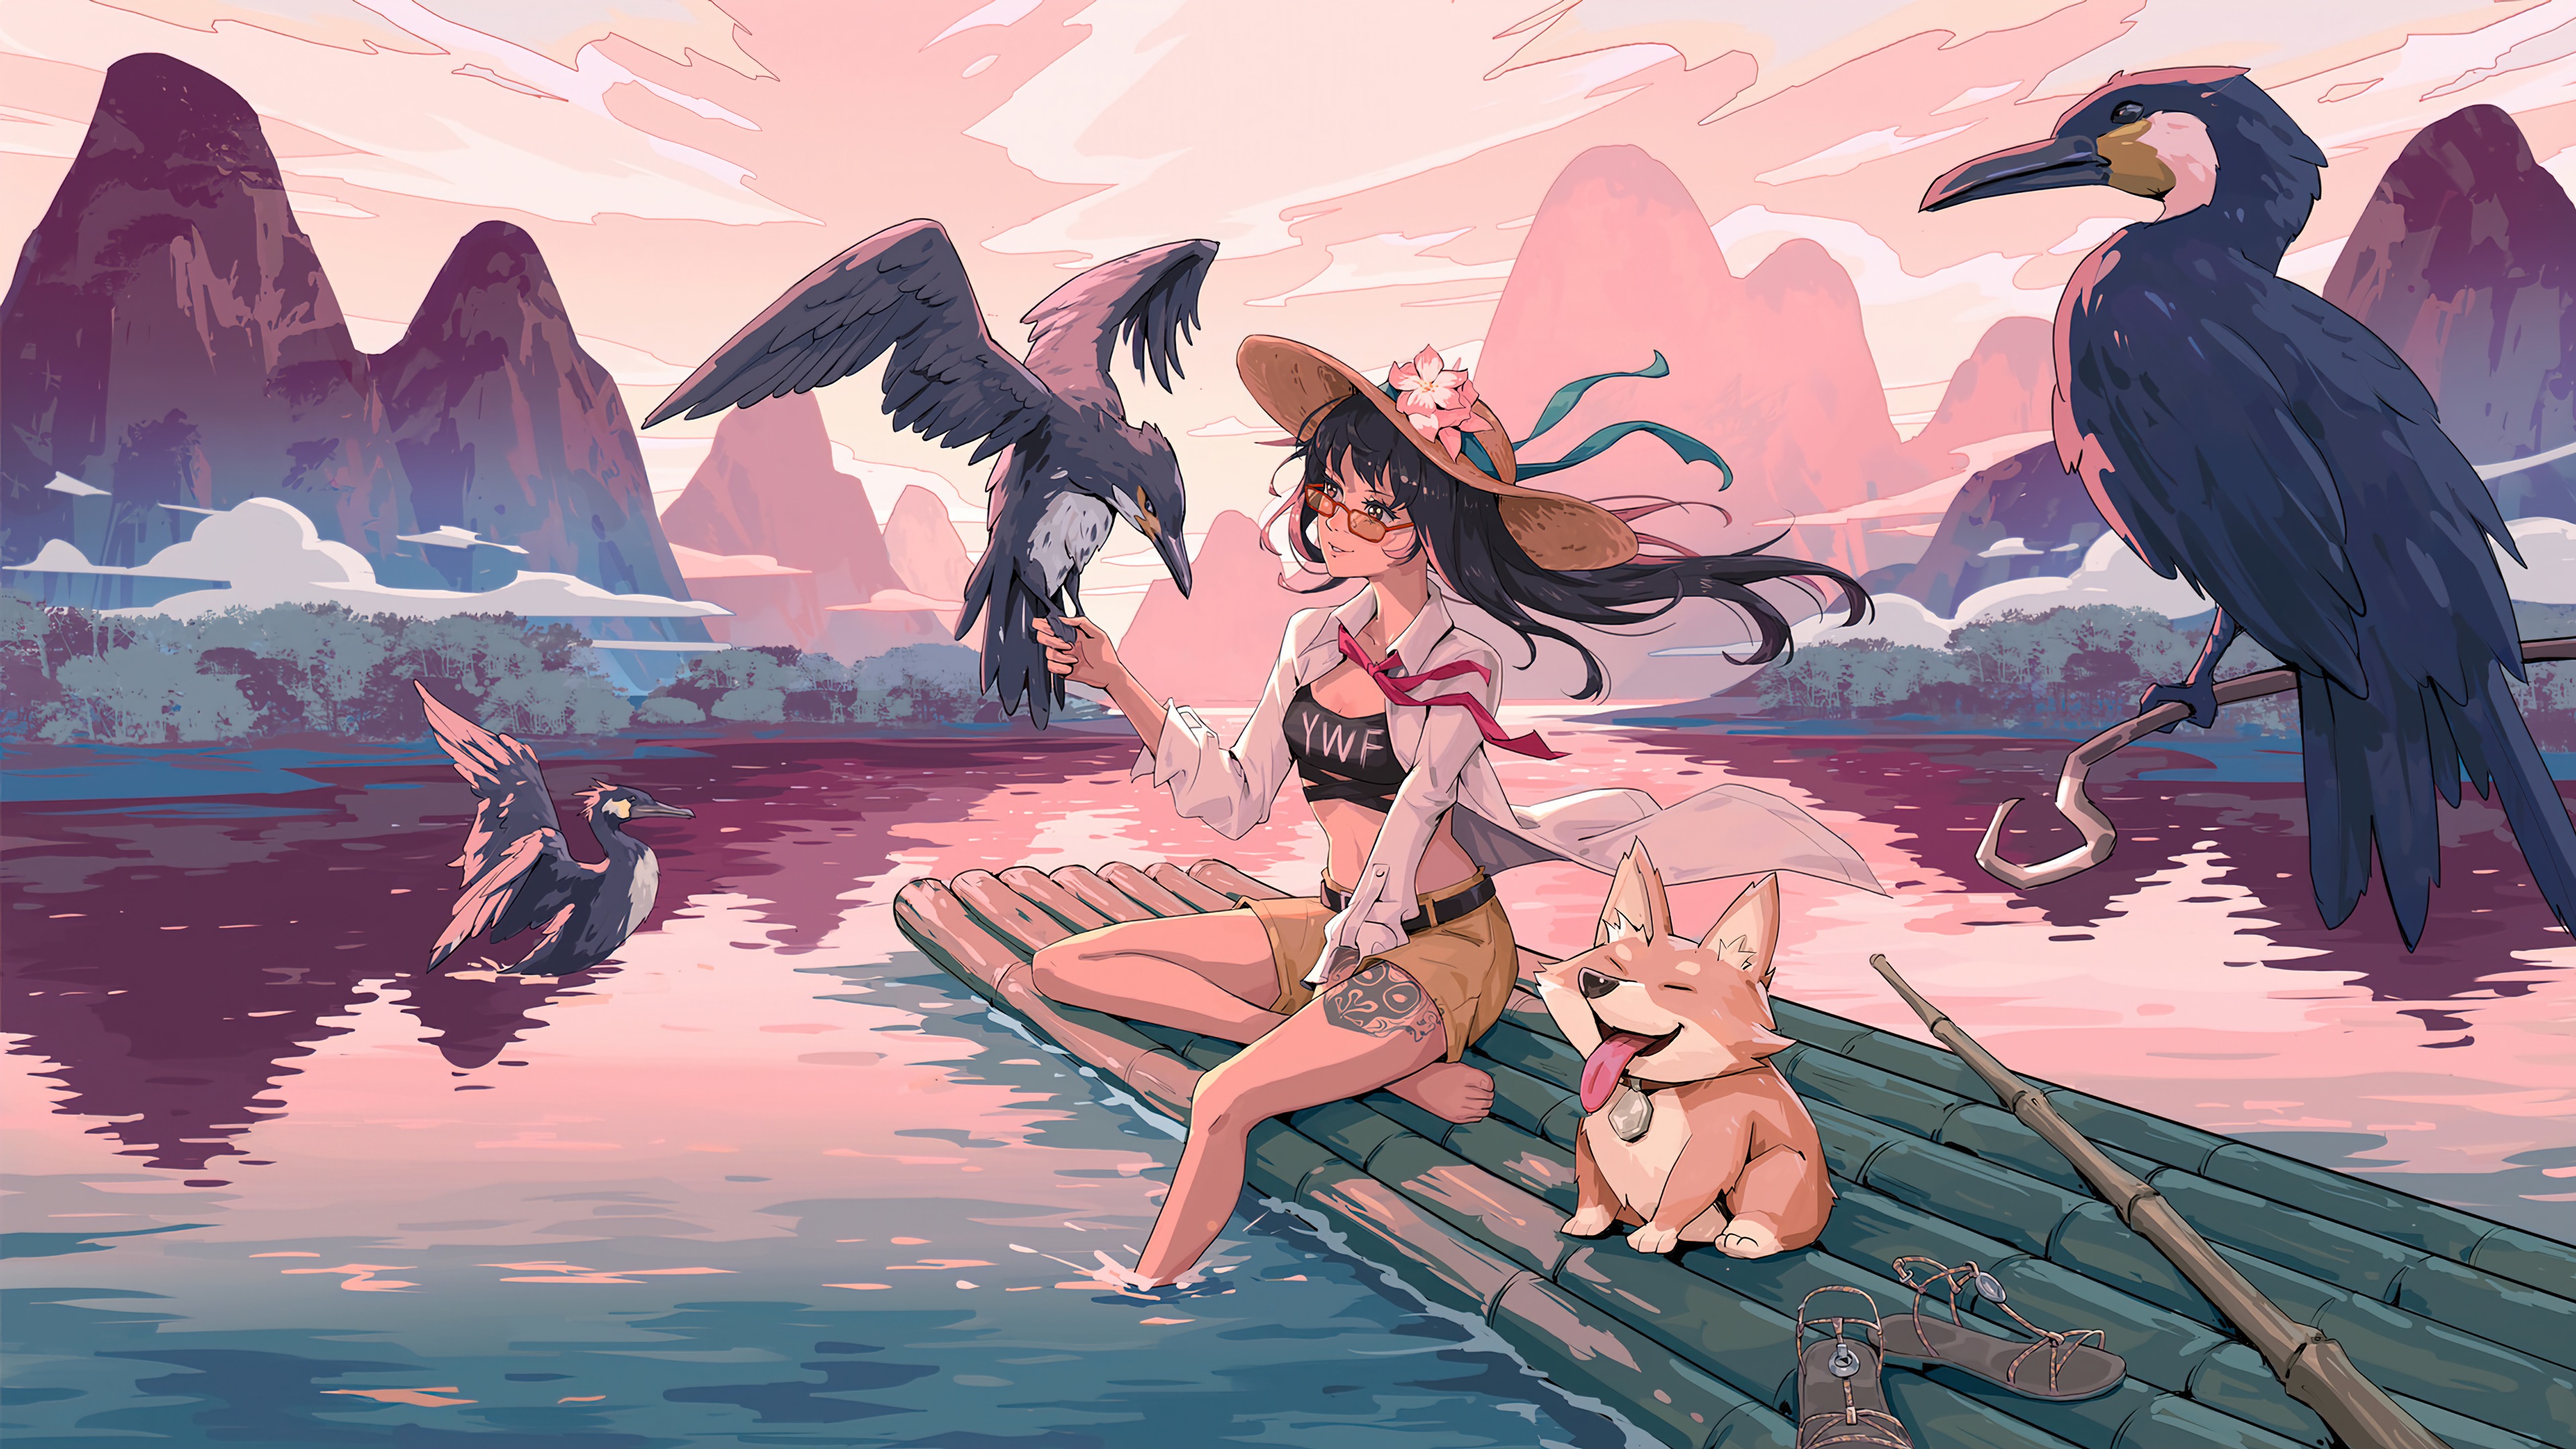 Anime Girl 4k Ultra HD Wallpaper by Wenfei Ye